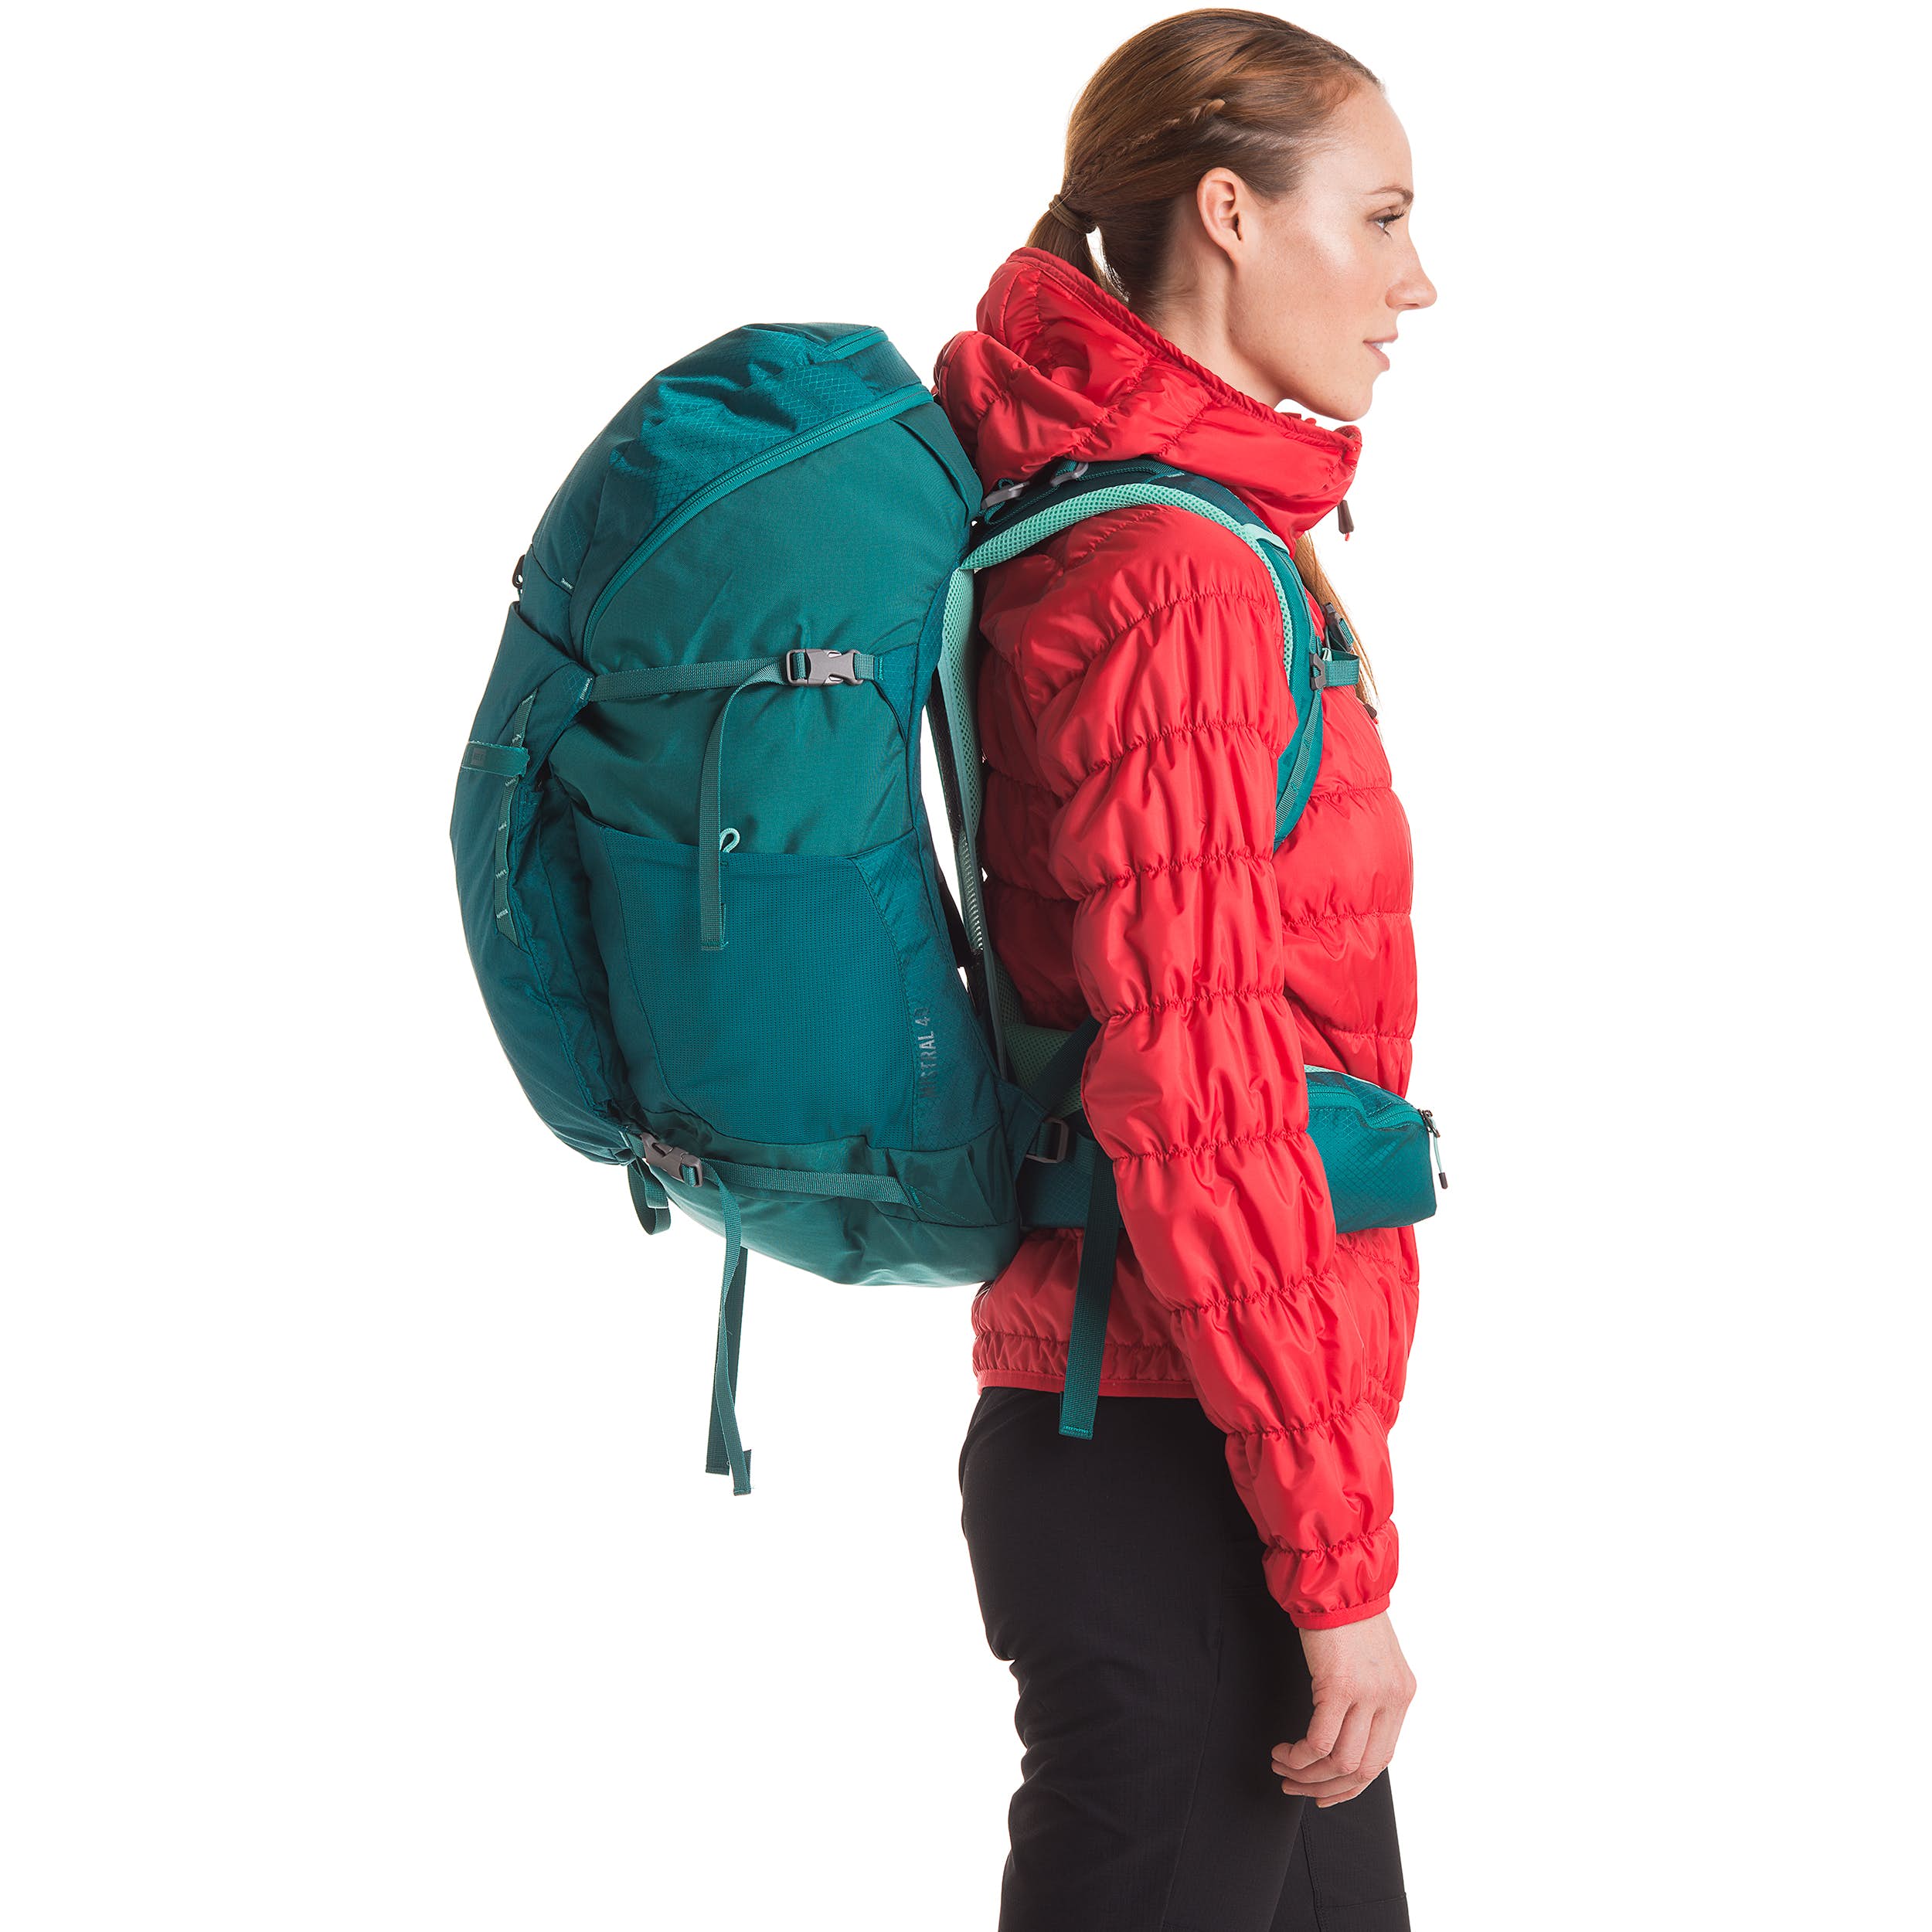 Belstane turquoise épaule sac pochette bnwt équestre/camping/randonnée 